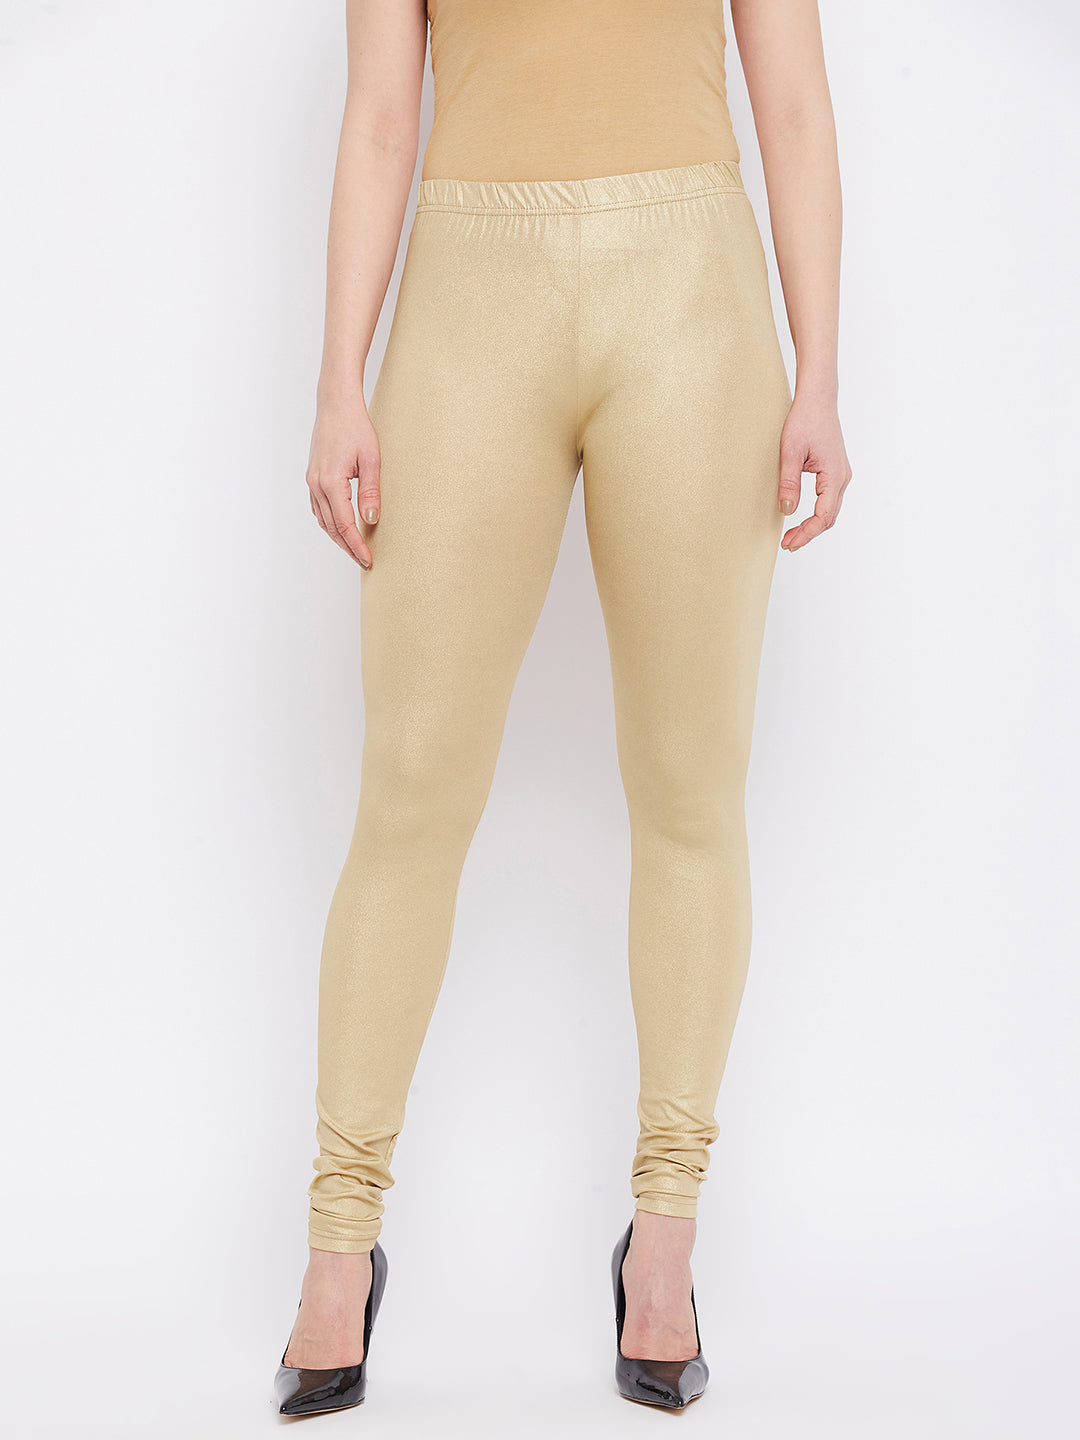 Shimmer Medium Gold Leggings  shimmer leggings gold – The Pajama Factory